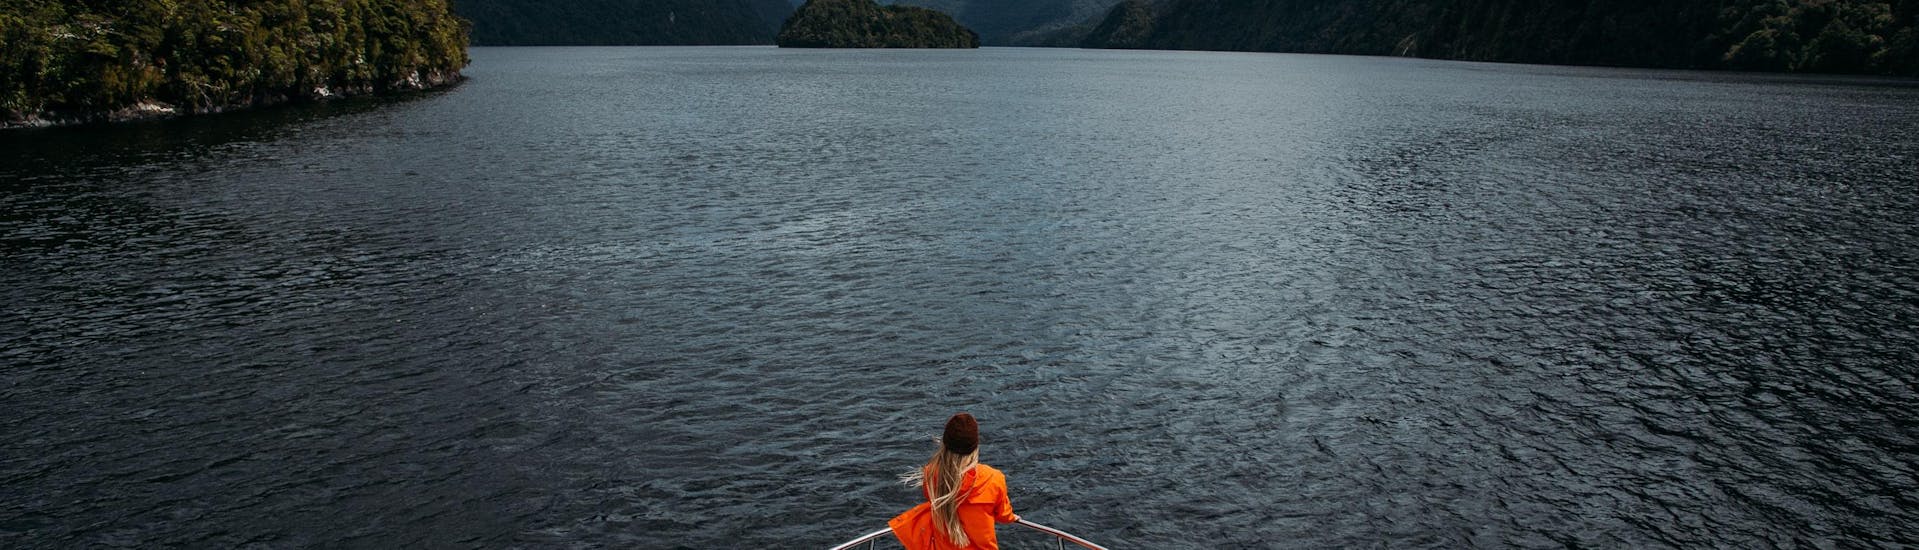 Balade en bateau - Doubtful Sound Fjord avec Observation de la faune & Visites touristiques.